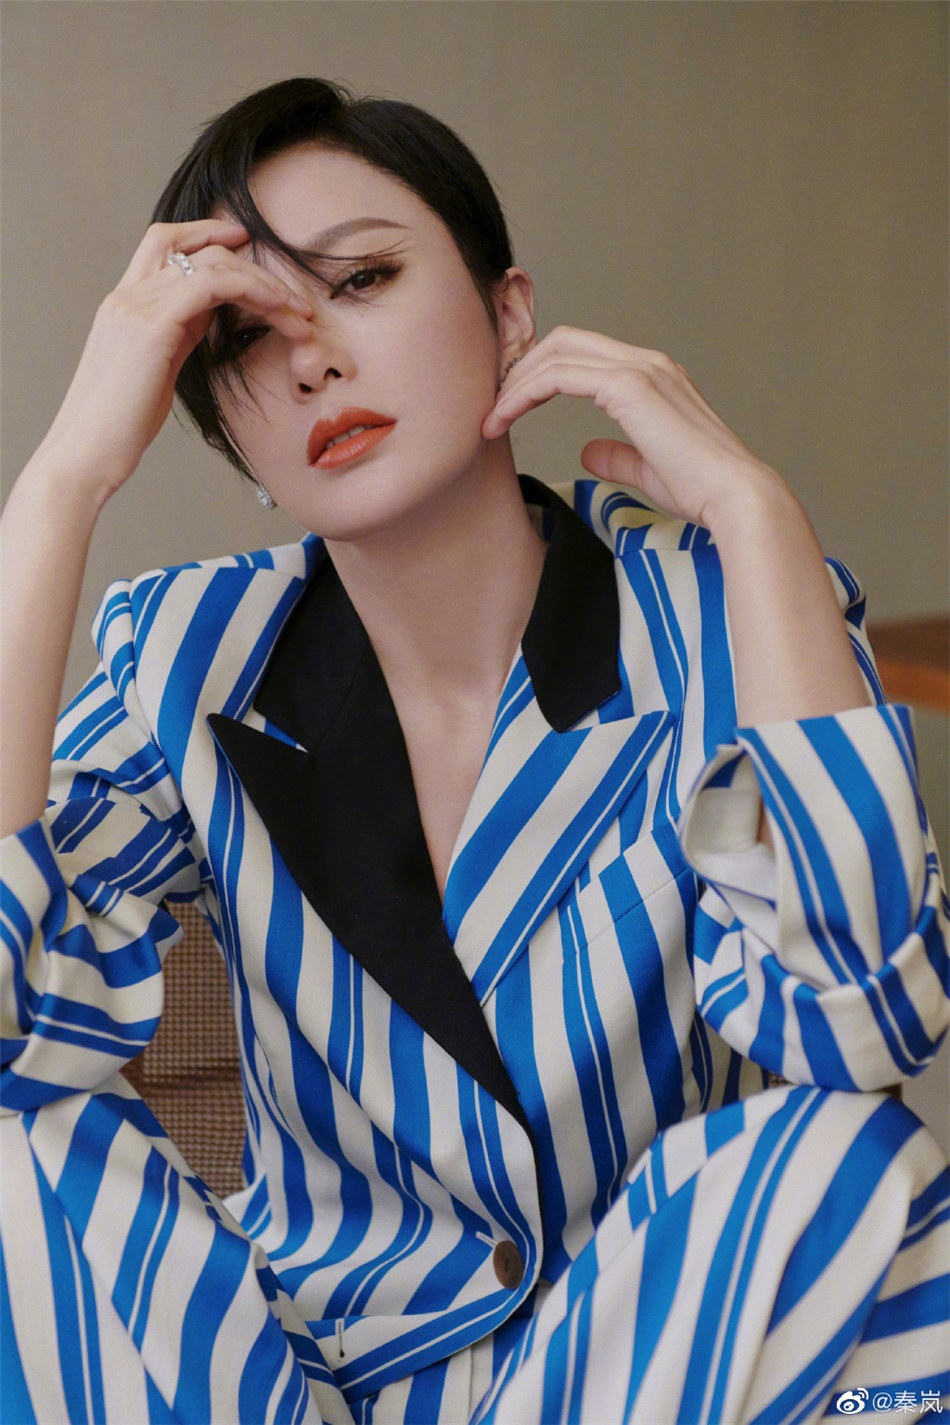 女明星秦岚穿蓝白条纹衬衣套装的帅气写真图片